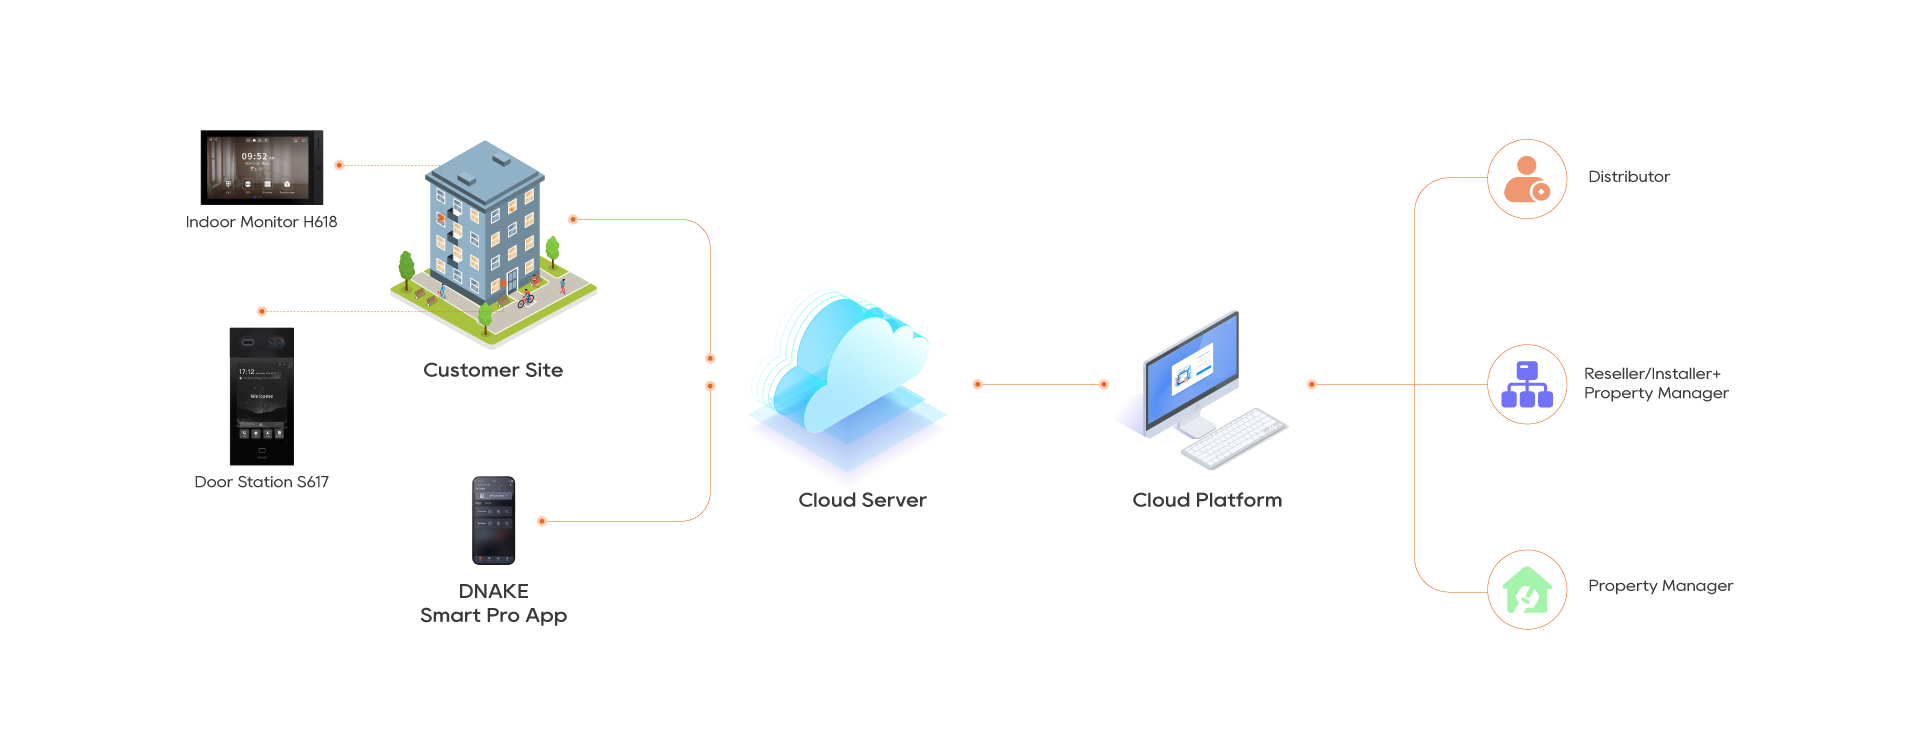 Cloud Platform Solution V1.5.1